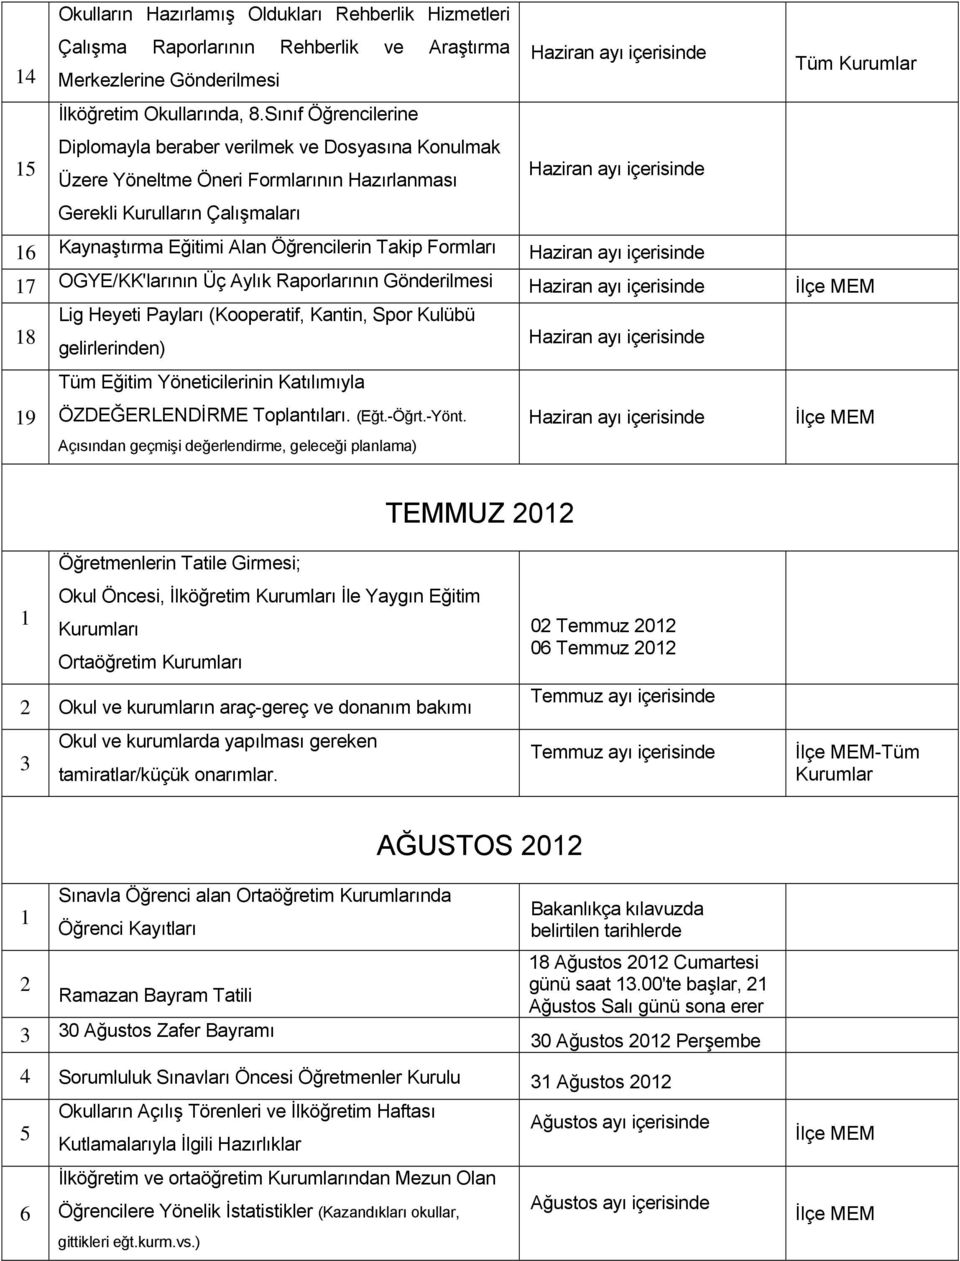 Öğrencilerin Takip Formları Haziran ayı içerisinde 7 OGYE/KK'larının Üç Aylık Raporlarının Gönderilmesi Haziran ayı içerisinde 8 Lig Heyeti Payları (Kooperatif, Kantin, Spor Kulübü gelirlerinden)